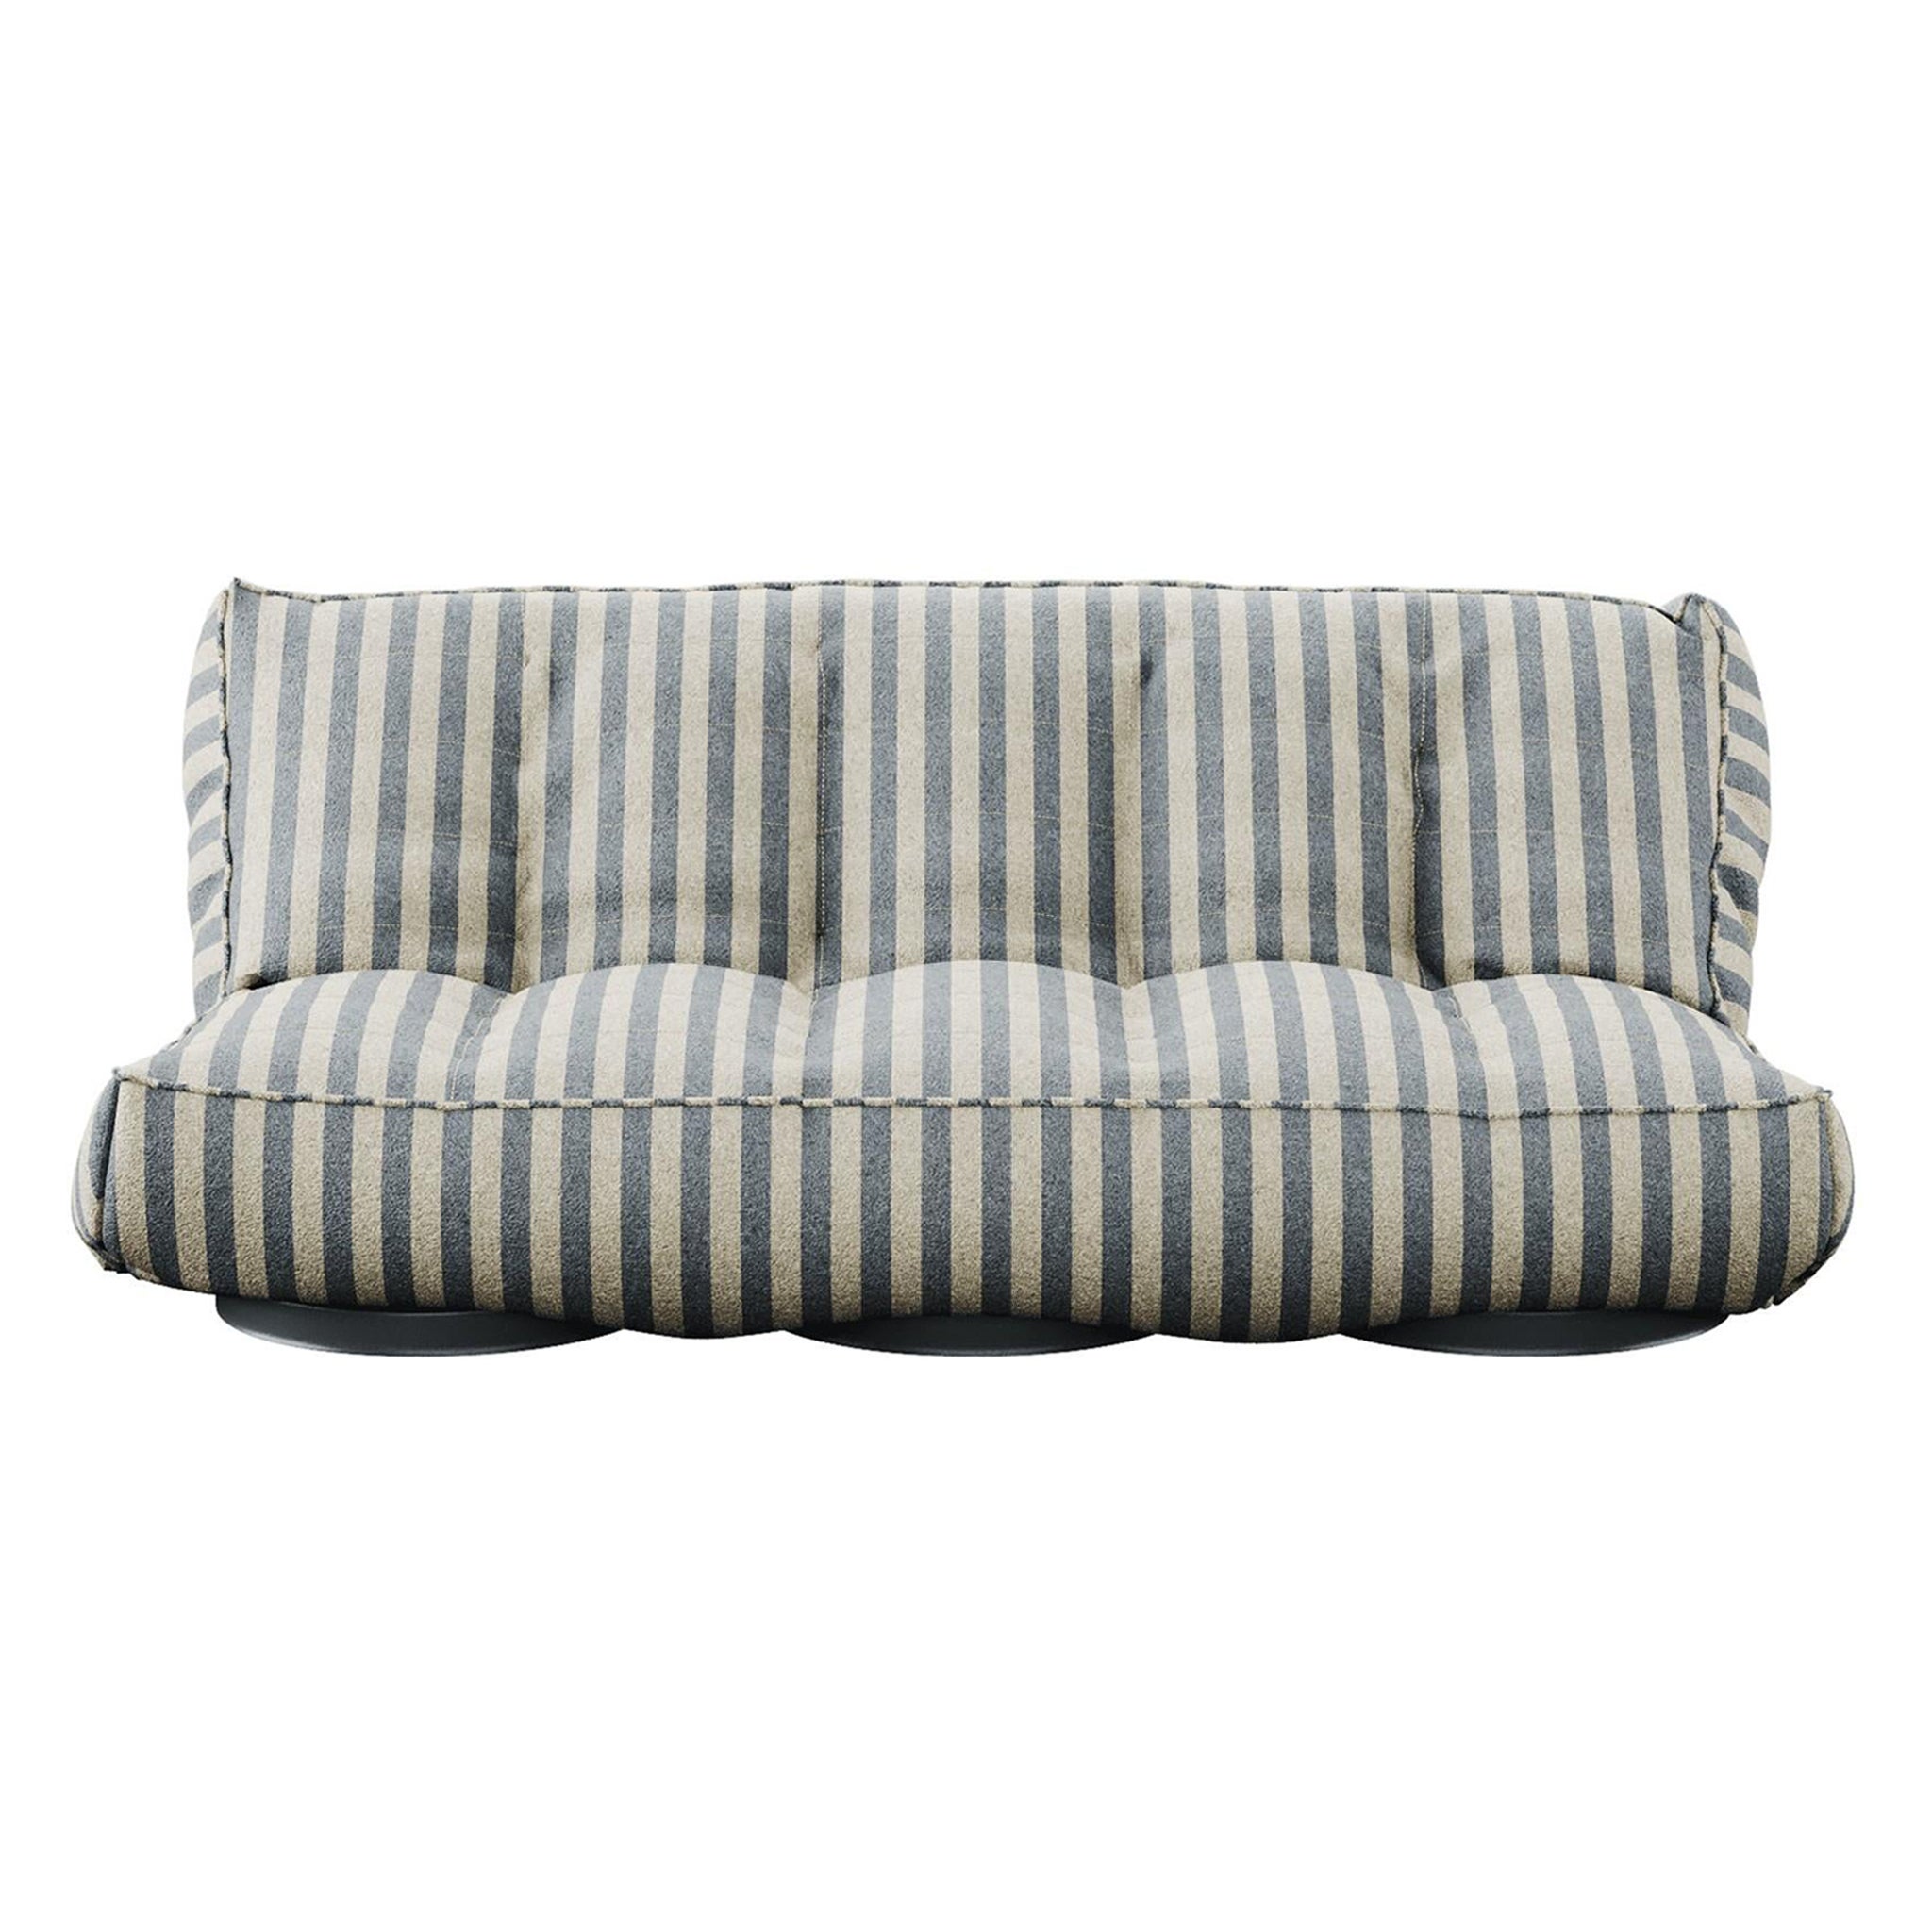 Modernes Sofa für den Außenbereich, faltbar, gepolstert in blau gestreiftem Stoff für den Außenbereich